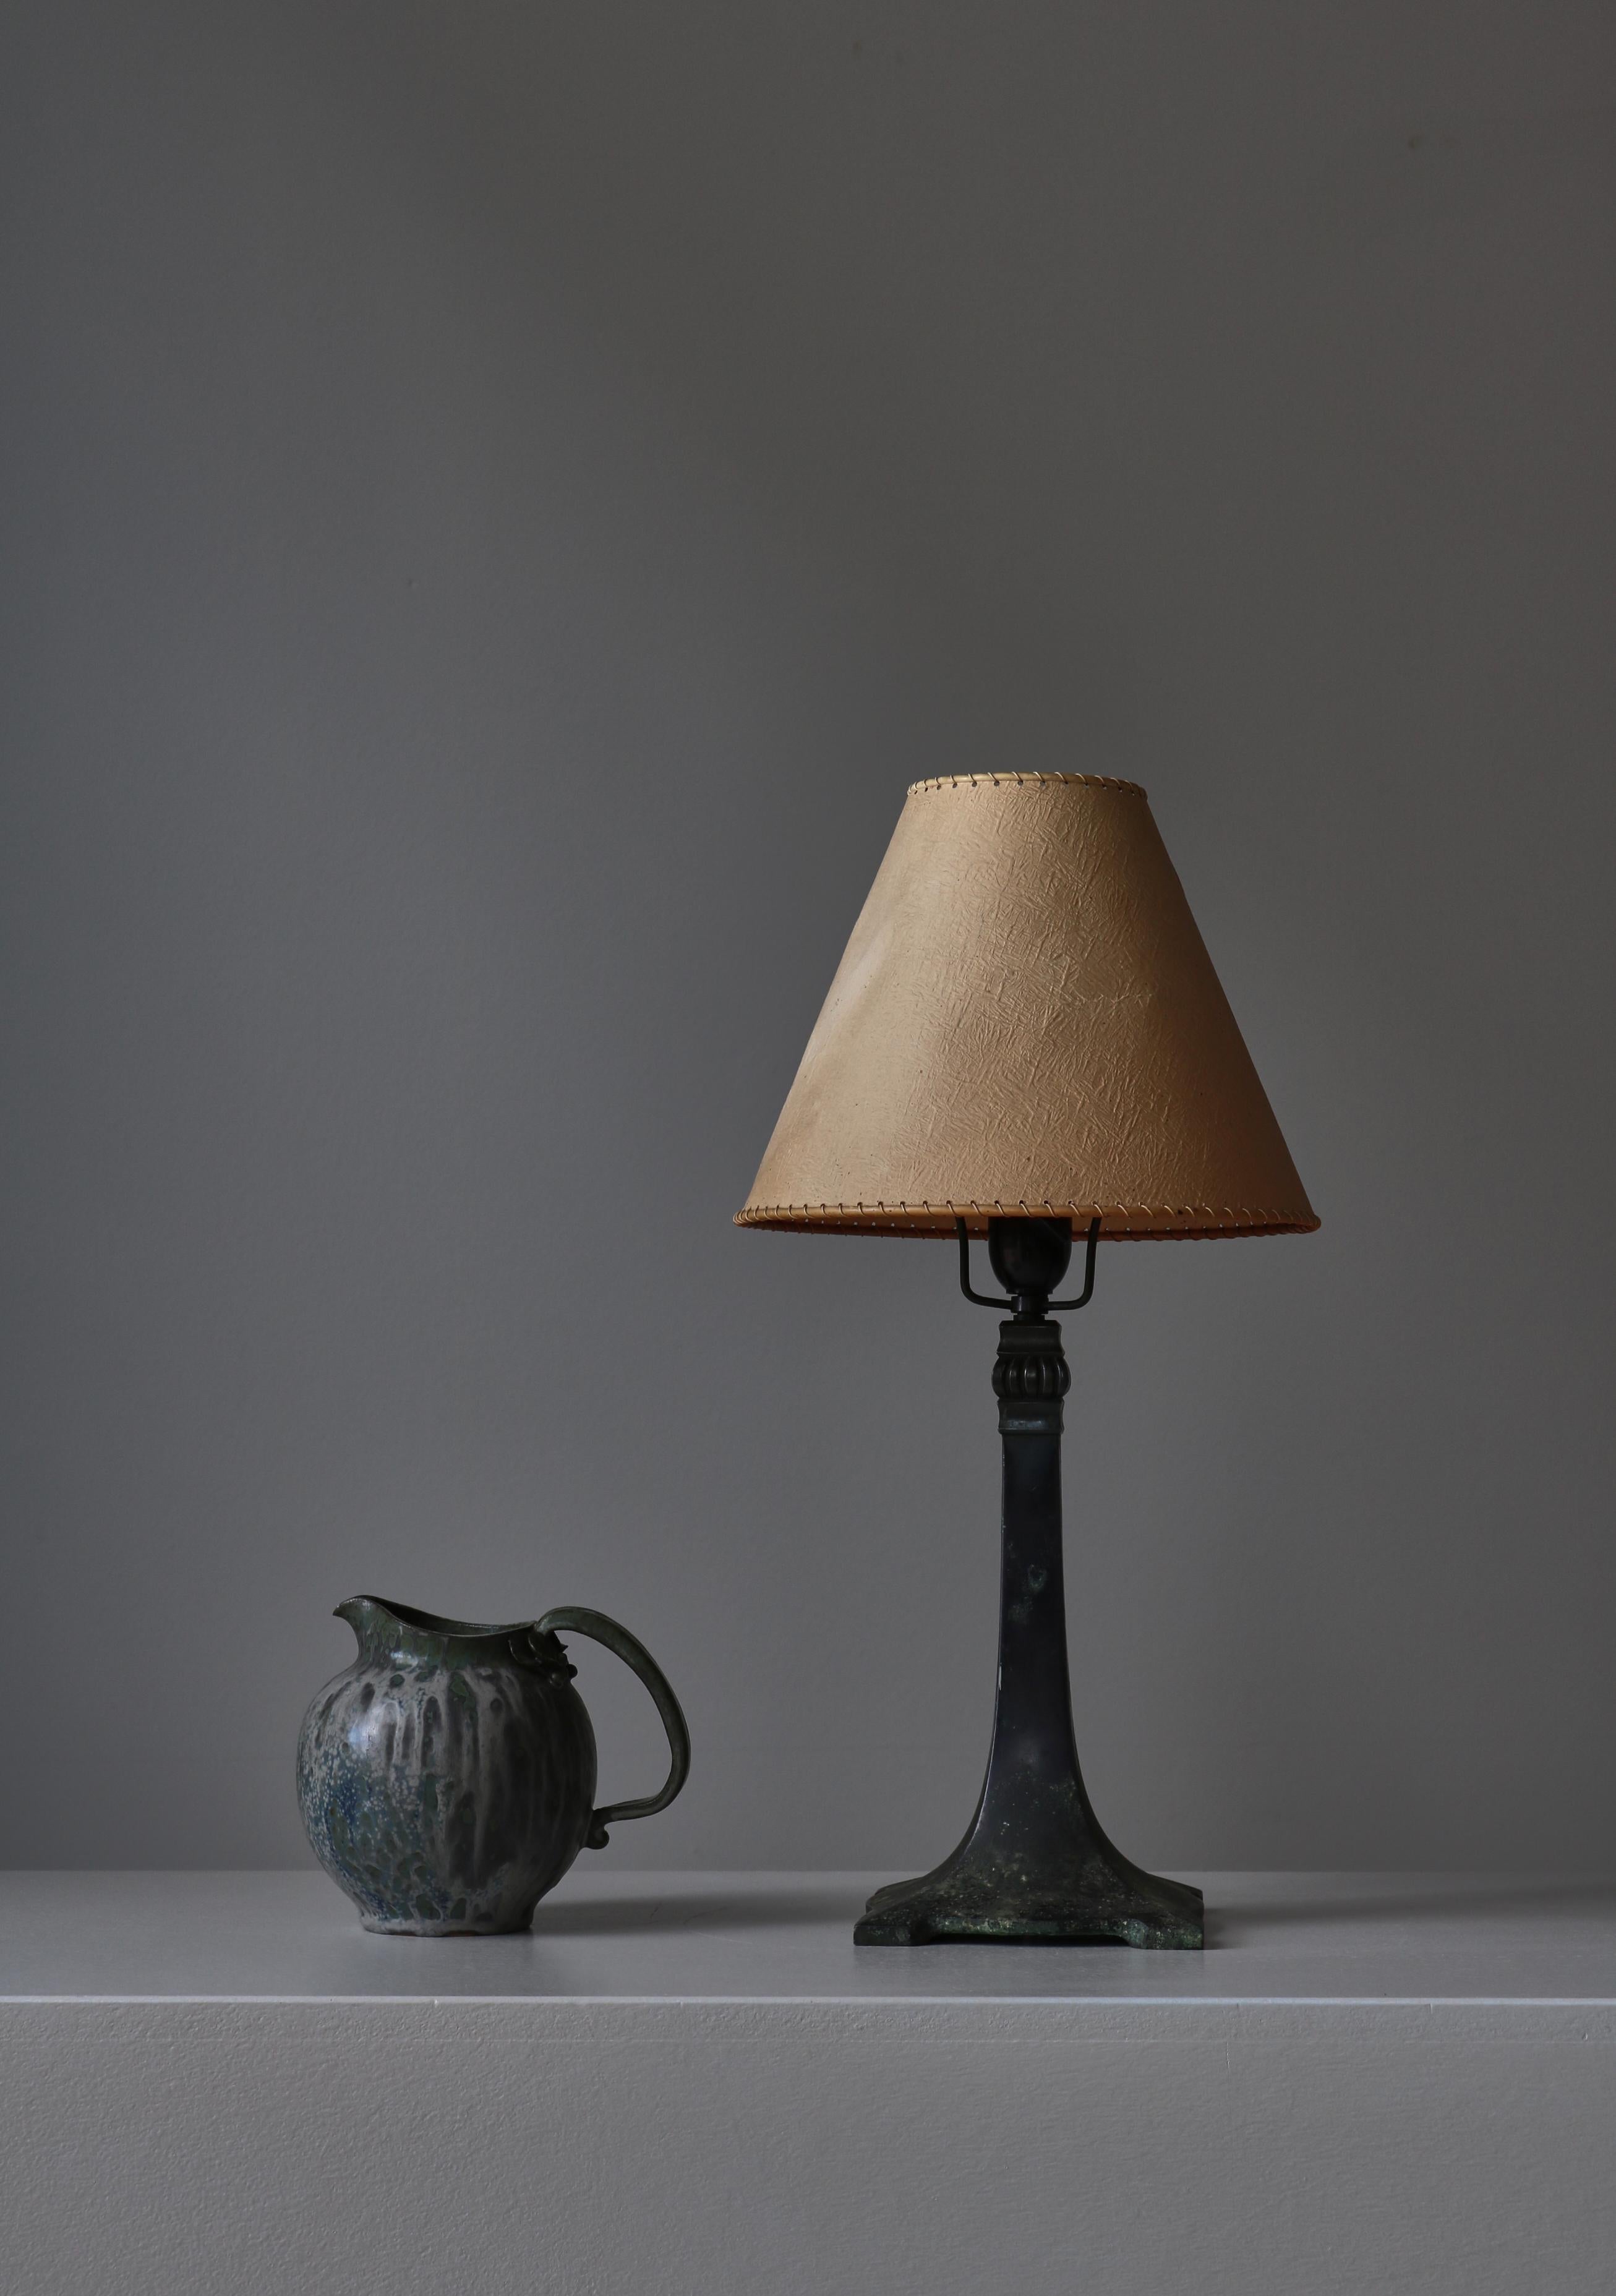 Belle lampe de table Art Déco en bronze massif patiné. Fabriqué au Danemark dans les années 1920. Excellente qualité et bonne tenue. Dans le style de Just Andersen. Équipé d'un ancien abat-jour qui peut ne pas être d'origine.